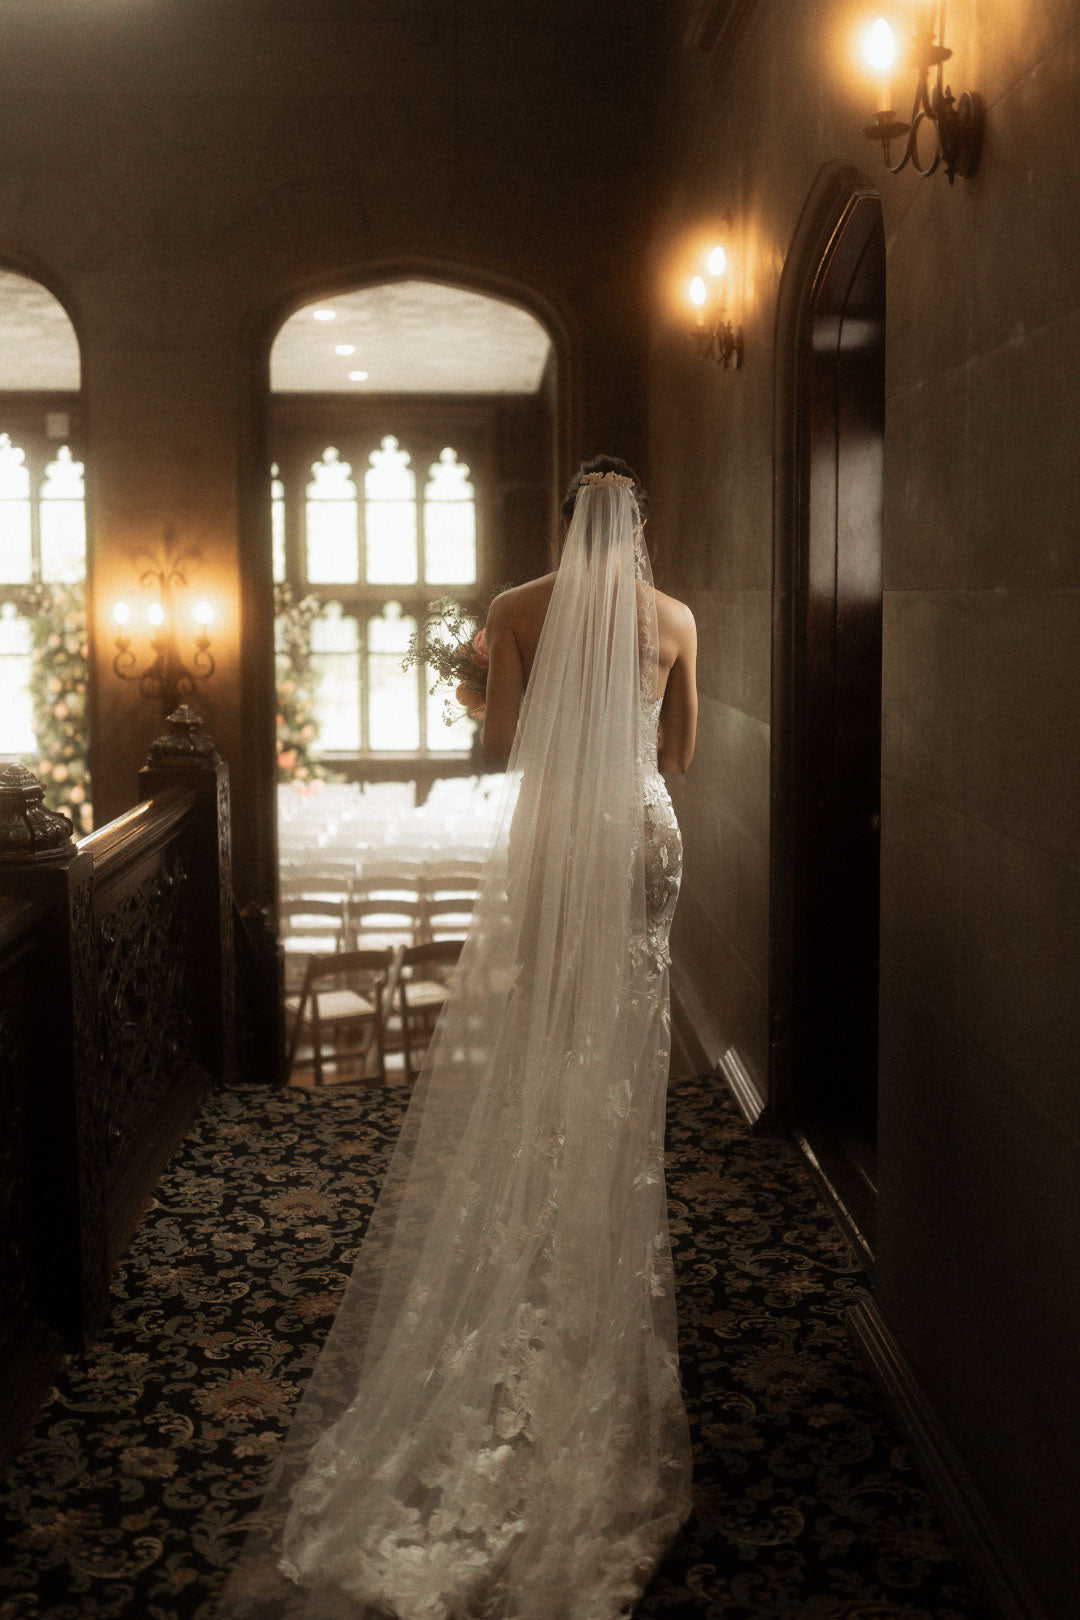 Bride walking in wedding Veil